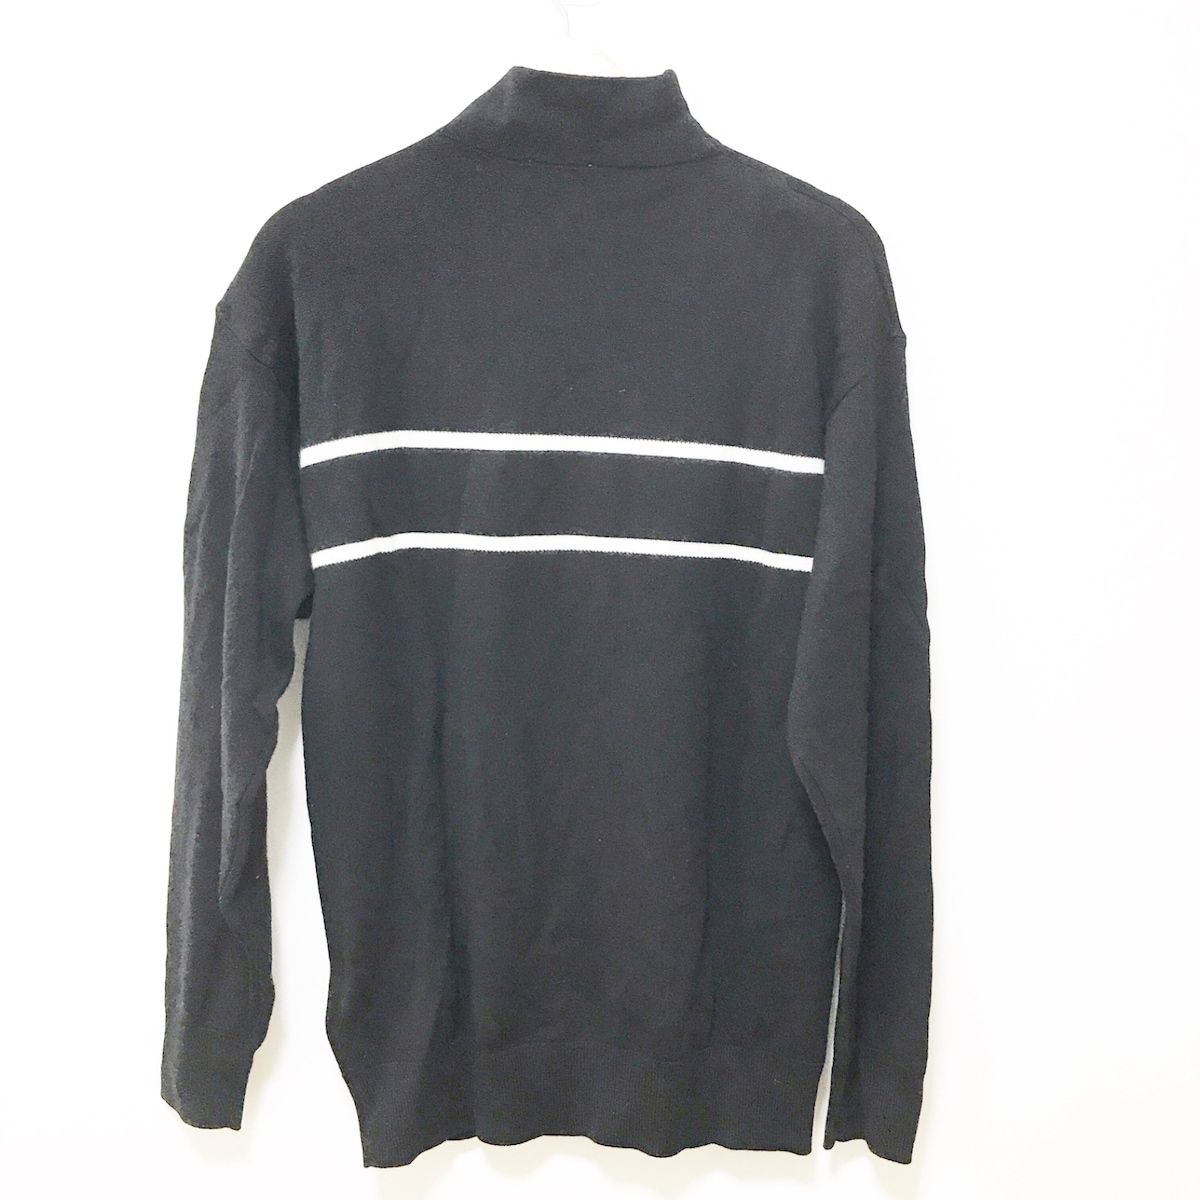 MONCLER(モンクレール) 長袖セーター サイズS メンズ美品 COLLO ALTO TRICOT 黒×白 ハイネック - メルカリ